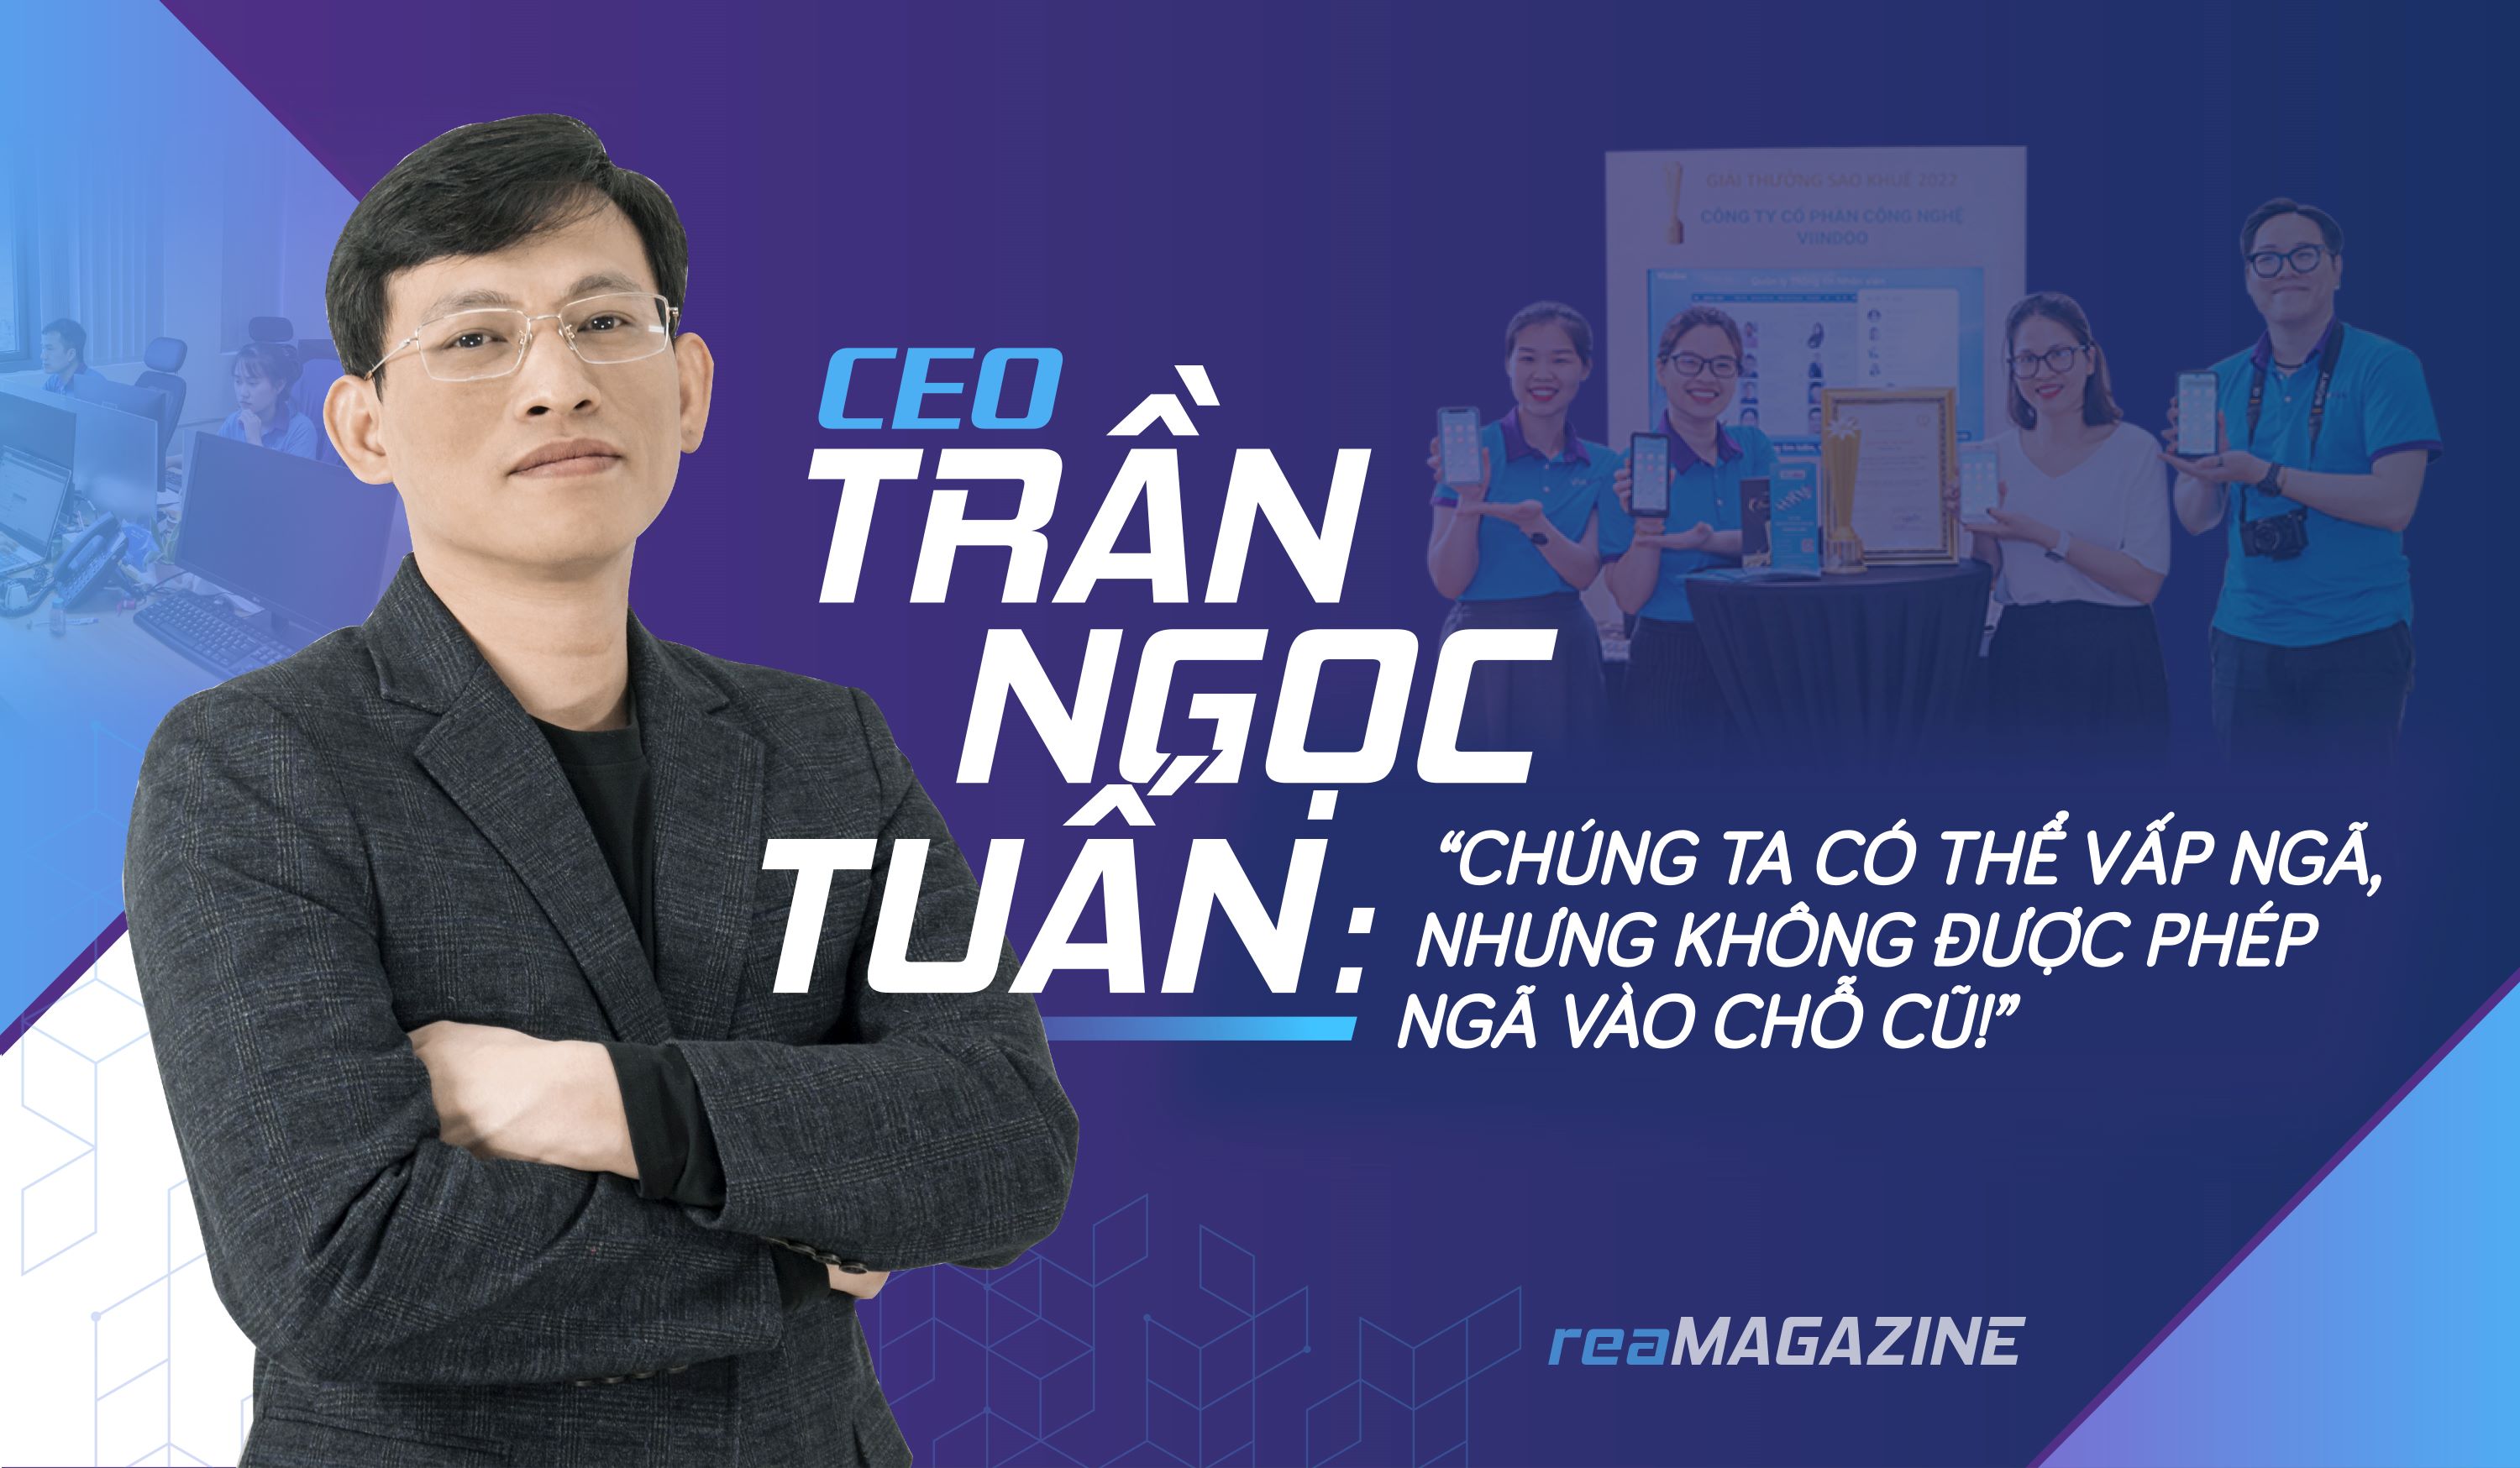 CEO Trần Ngọc Tuấn: “Chúng ta có thể vấp ngã, nhưng không được phép ngã vào chỗ cũ!”